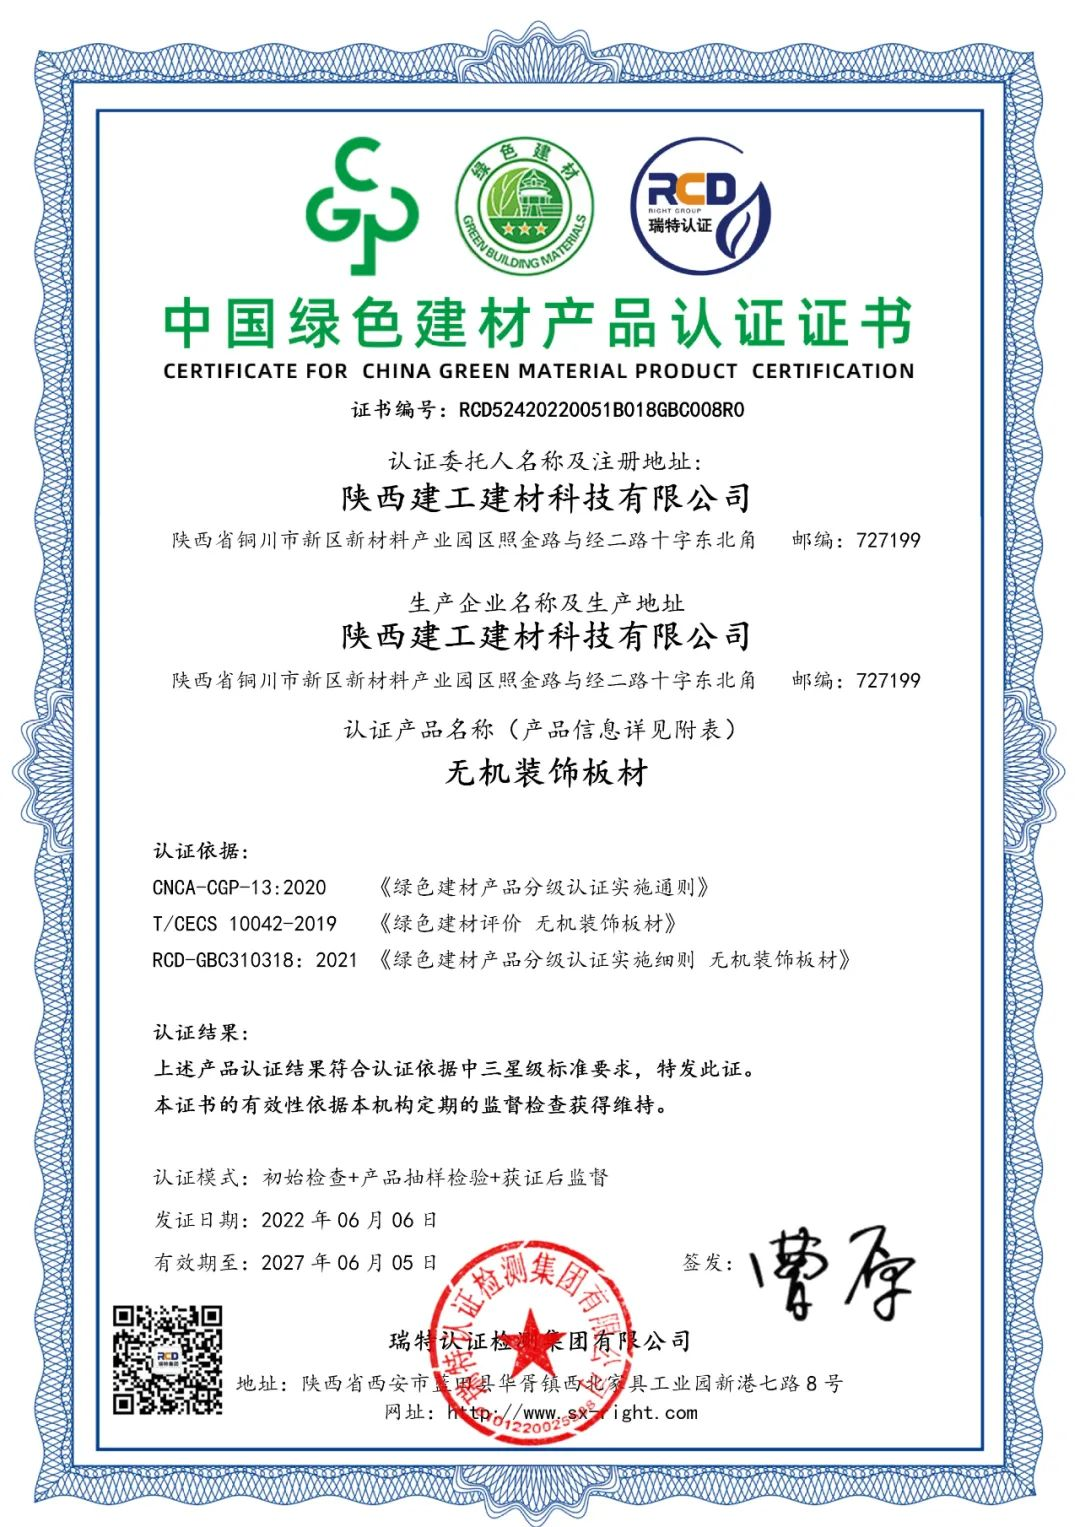 宝博体育
建材科技公司产品成功通过中国绿色建材产品最高级别认证